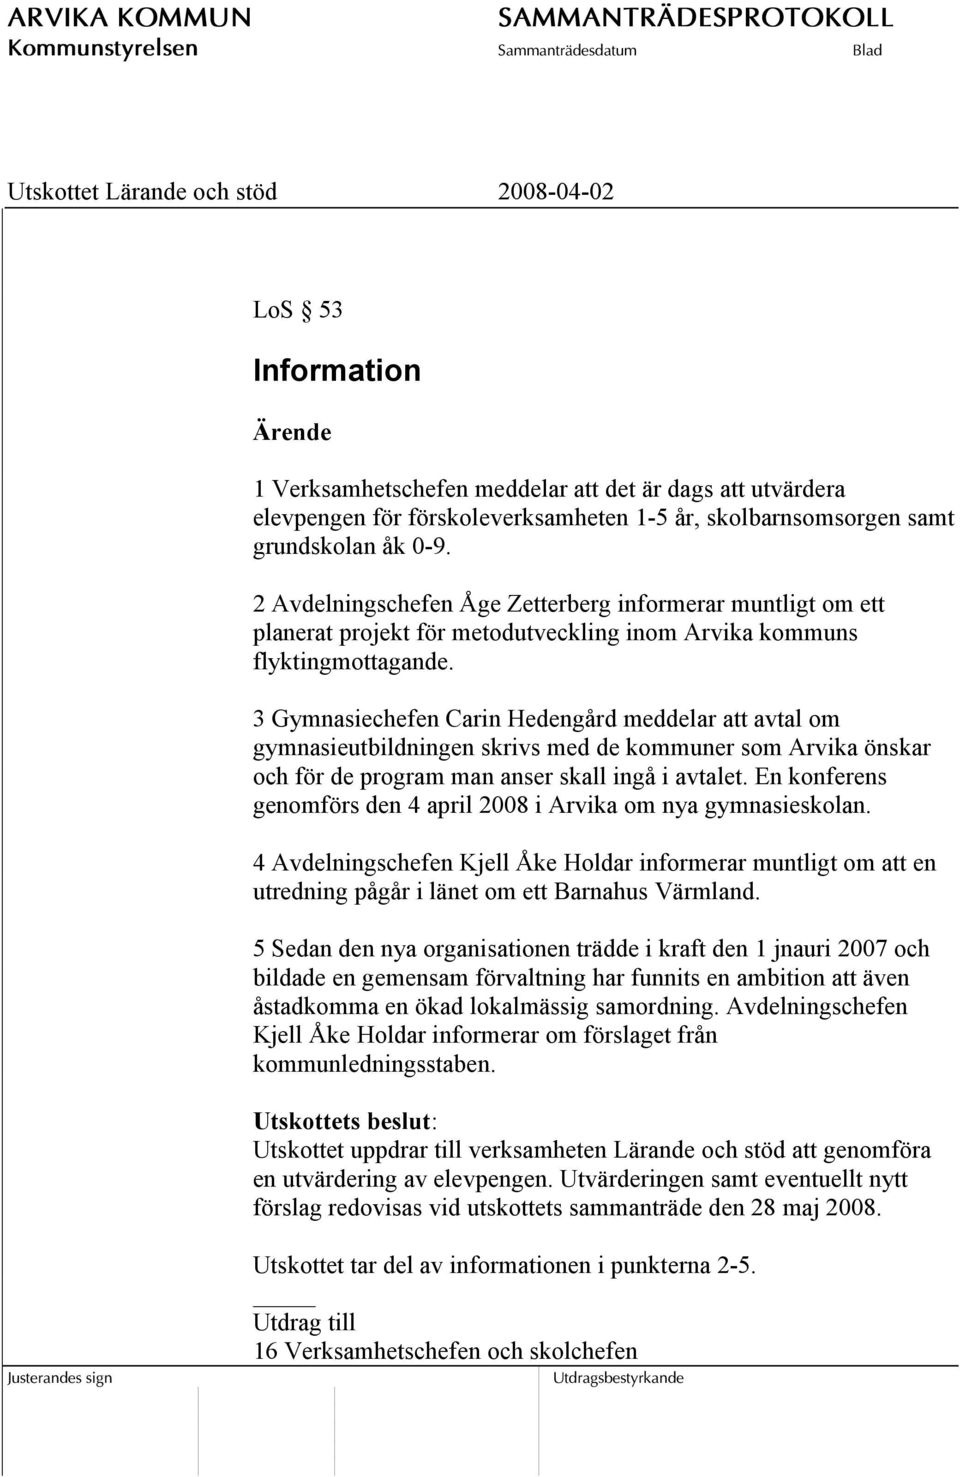 3 Gymnasiechefen Carin Hedengård meddelar att avtal om gymnasieutbildningen skrivs med de kommuner som Arvika önskar och för de program man anser skall ingå i avtalet.